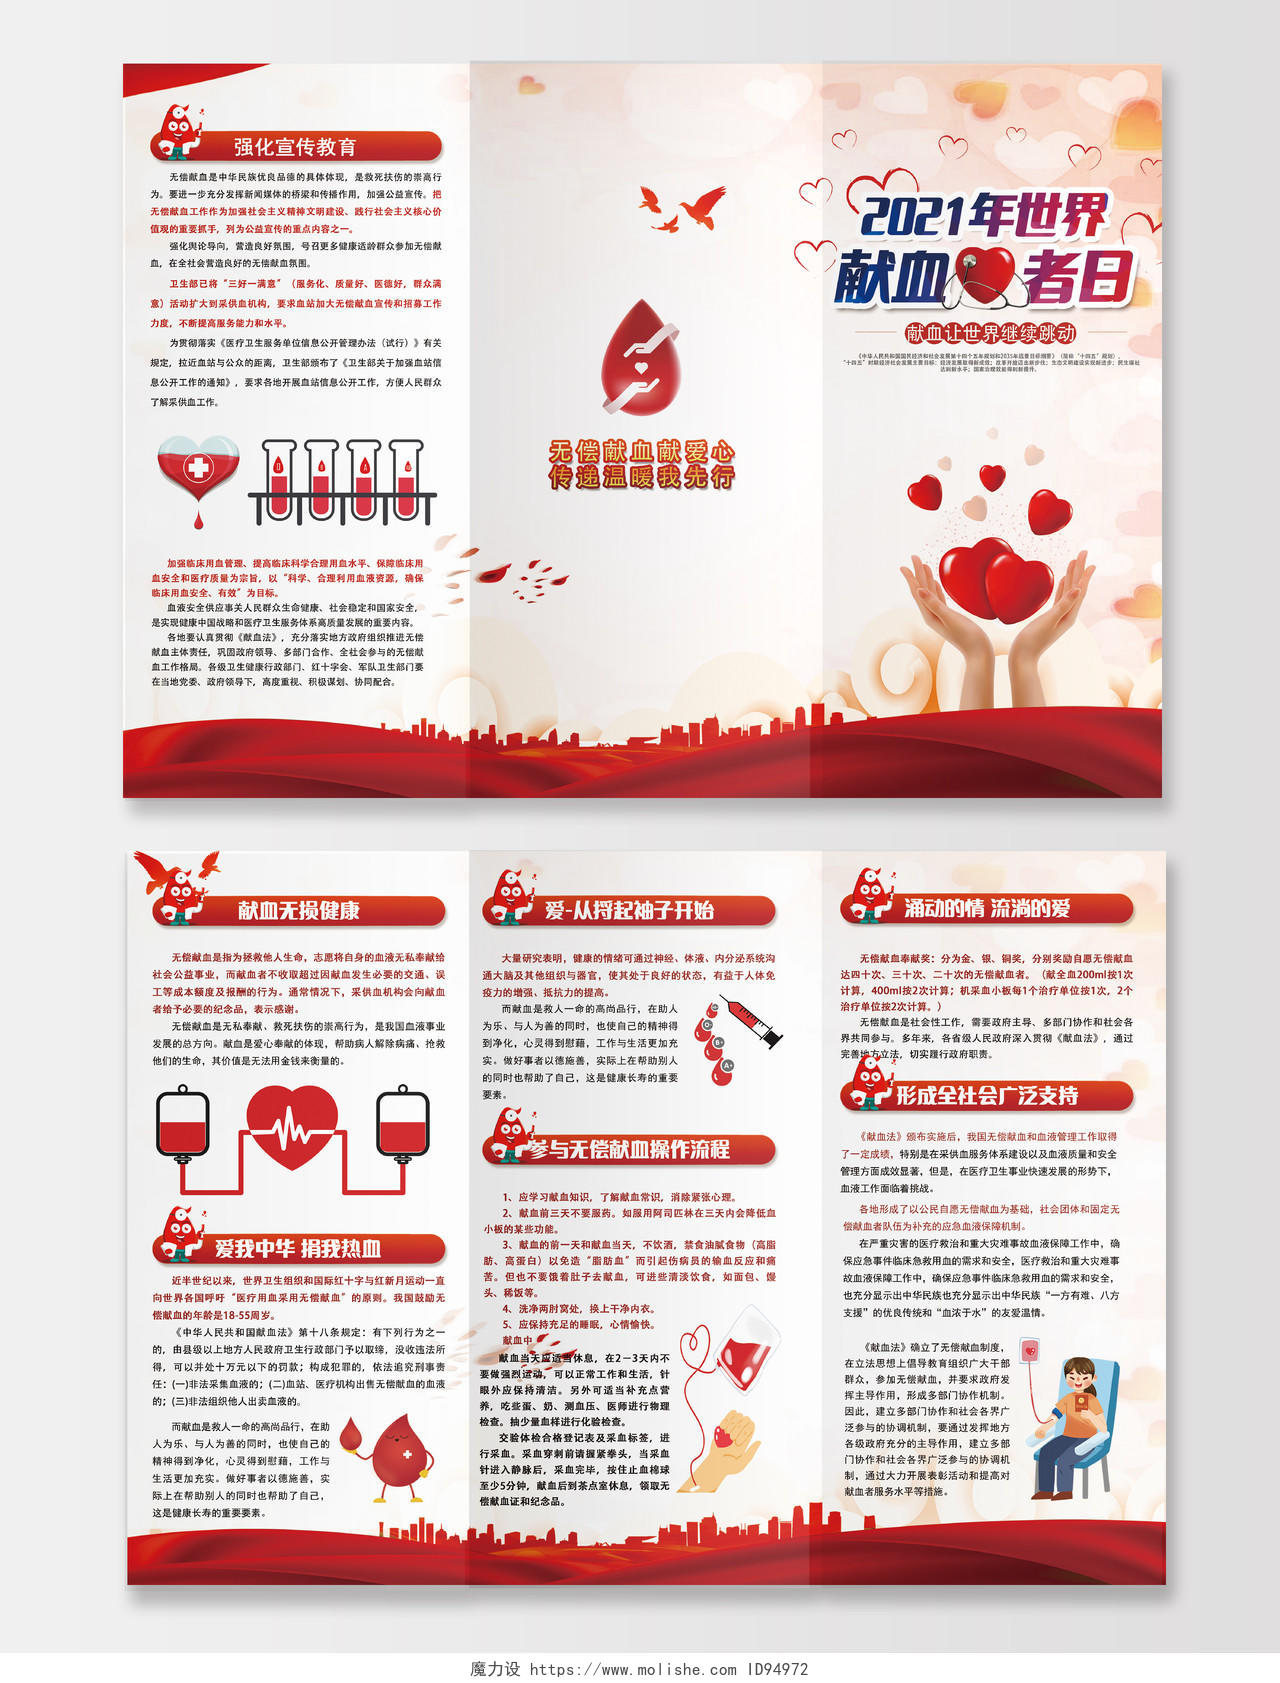 红色简约世界献血者日三折页无偿献血折页爱心献血公益宣传折页